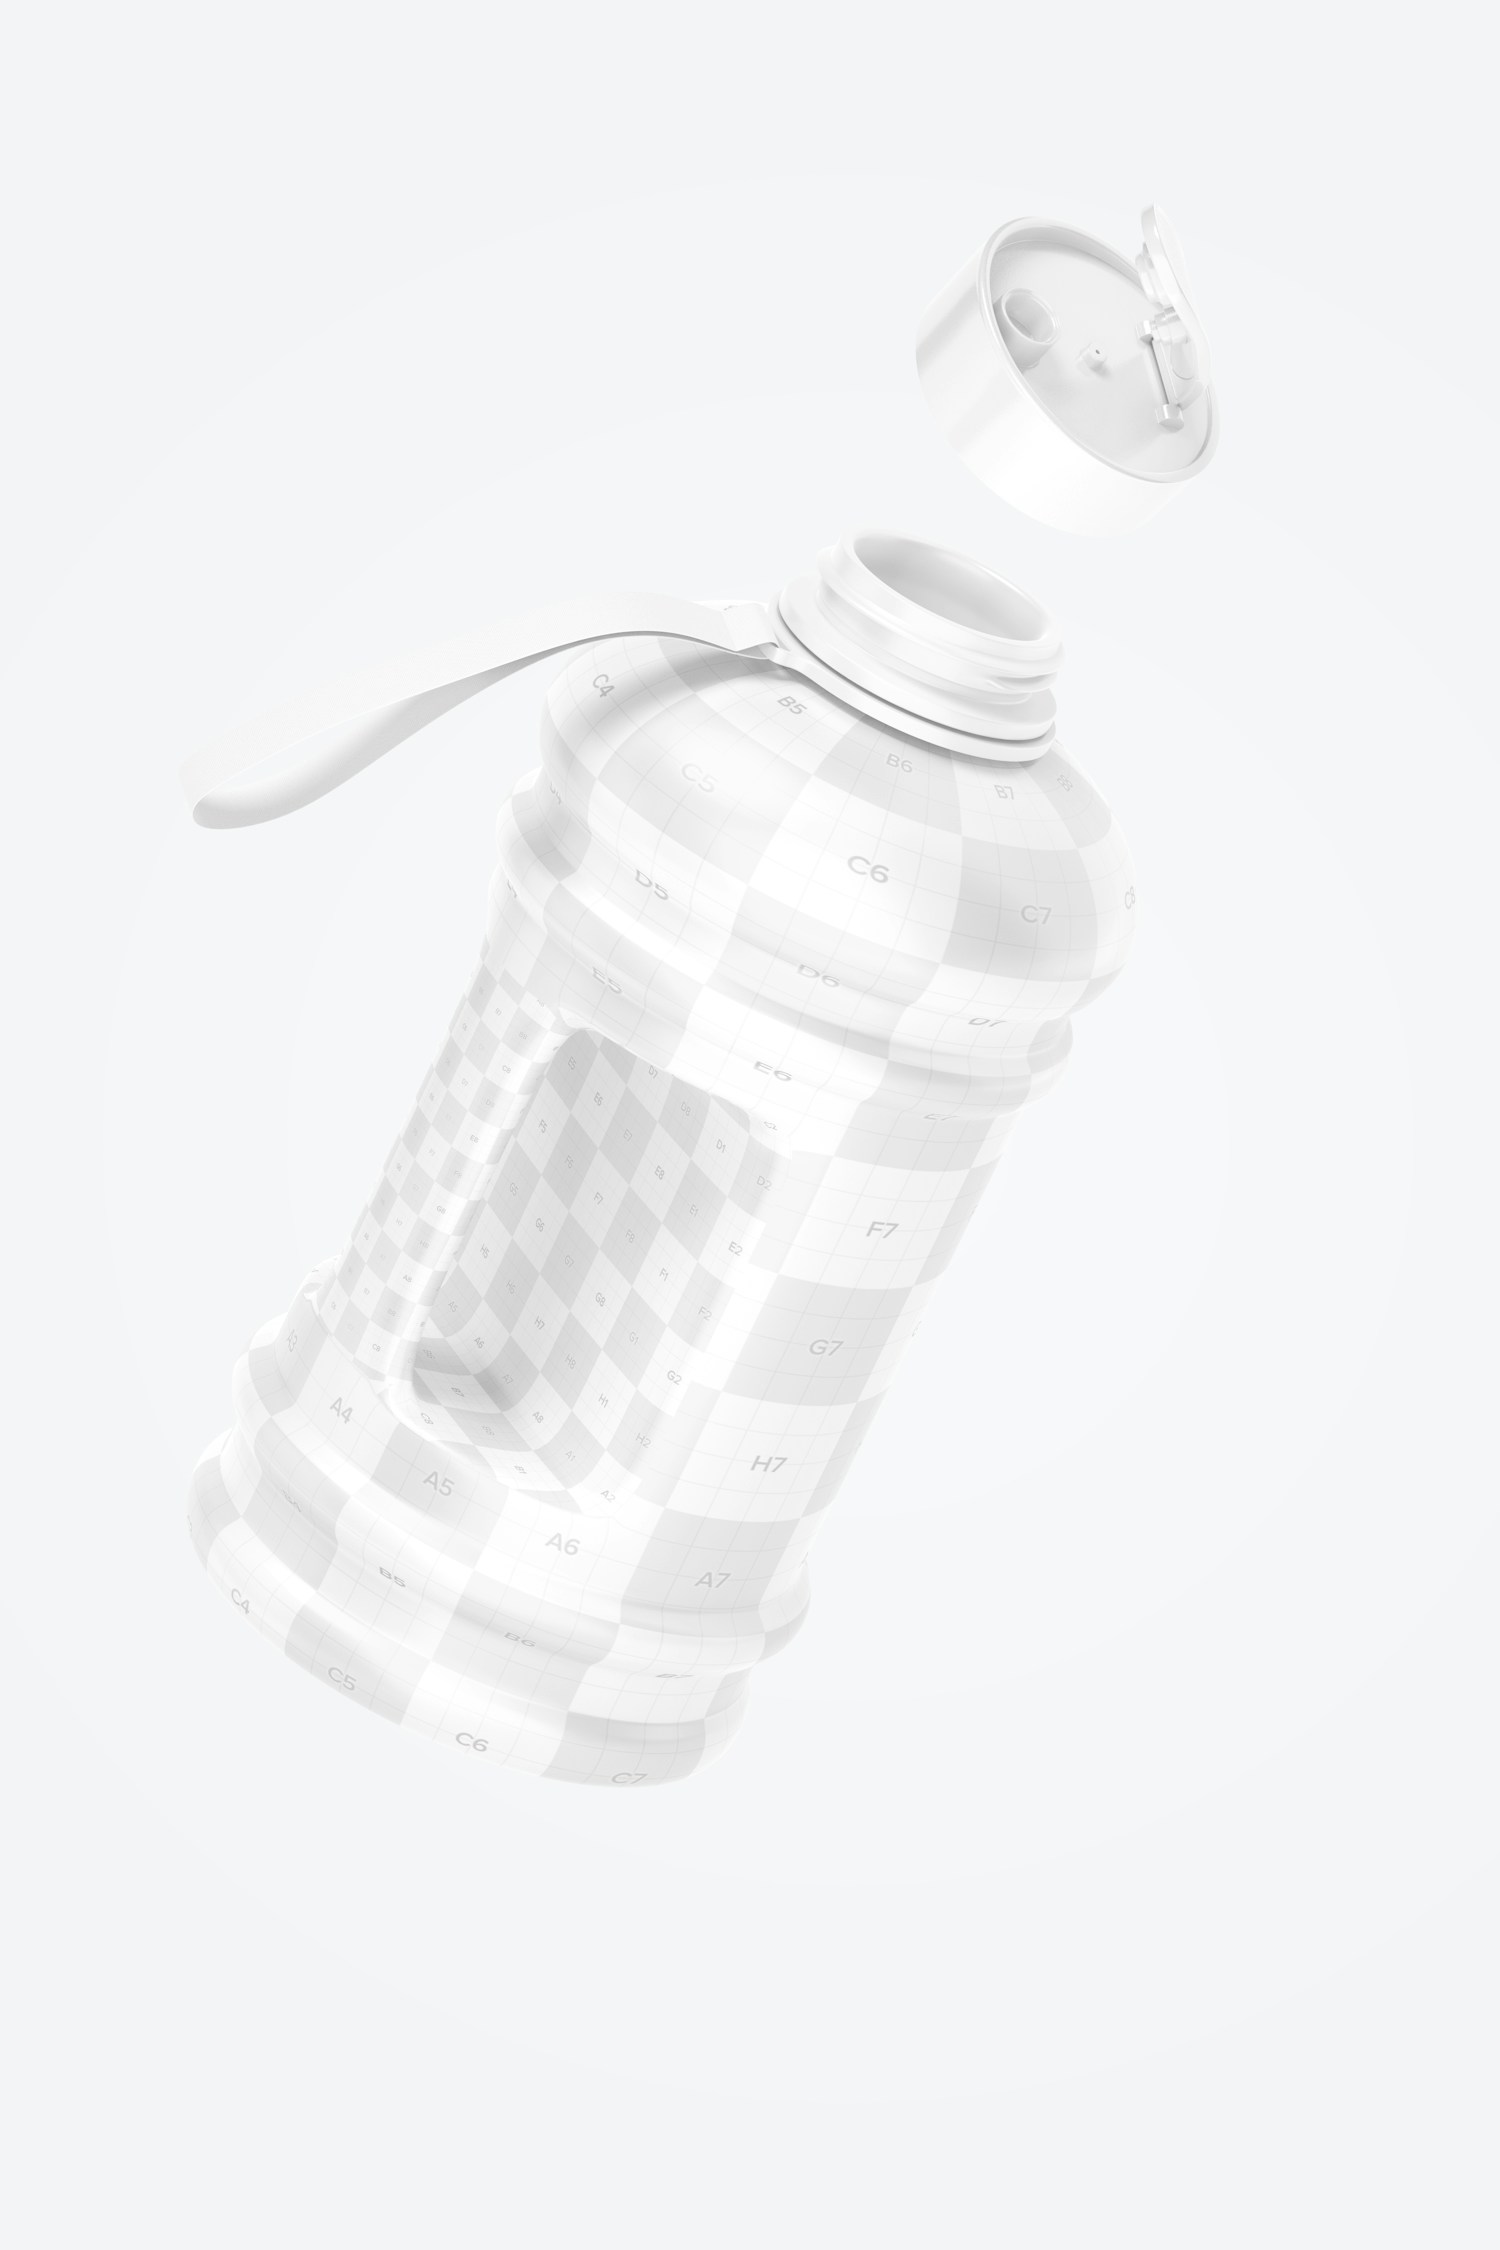 2.2 L Water Bottle Mockup, Floating